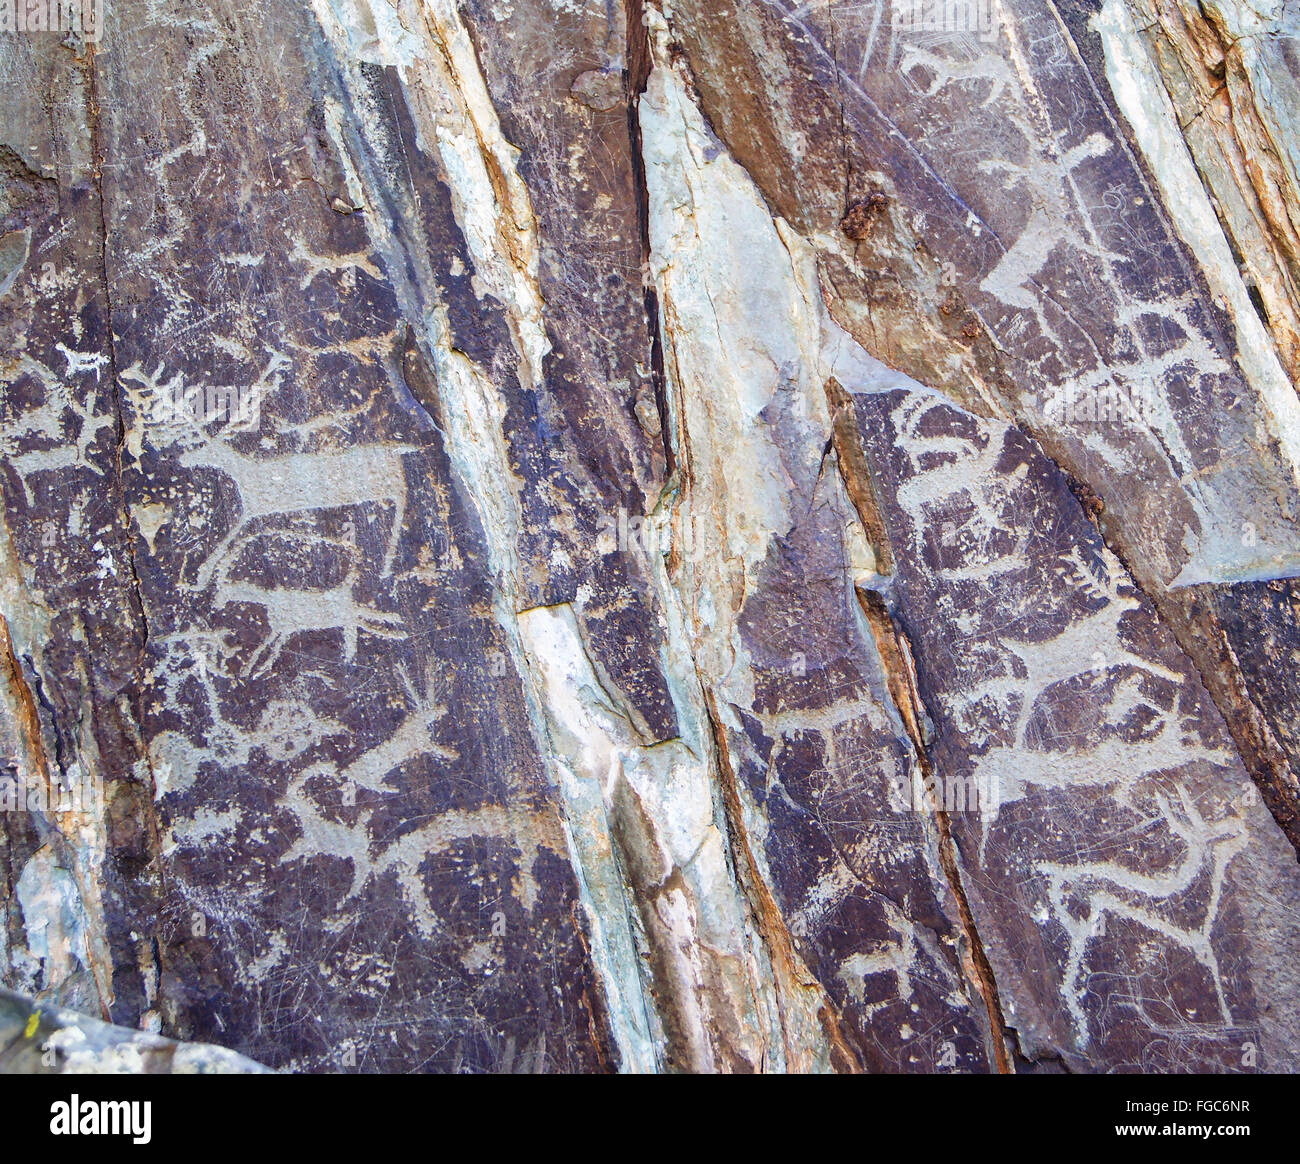 Silhouetten von Menschen und Tieren, die auf den Felsen von Naturvölkern, Petroglyphen, Felszeichnungen geschnitzt Stockfoto